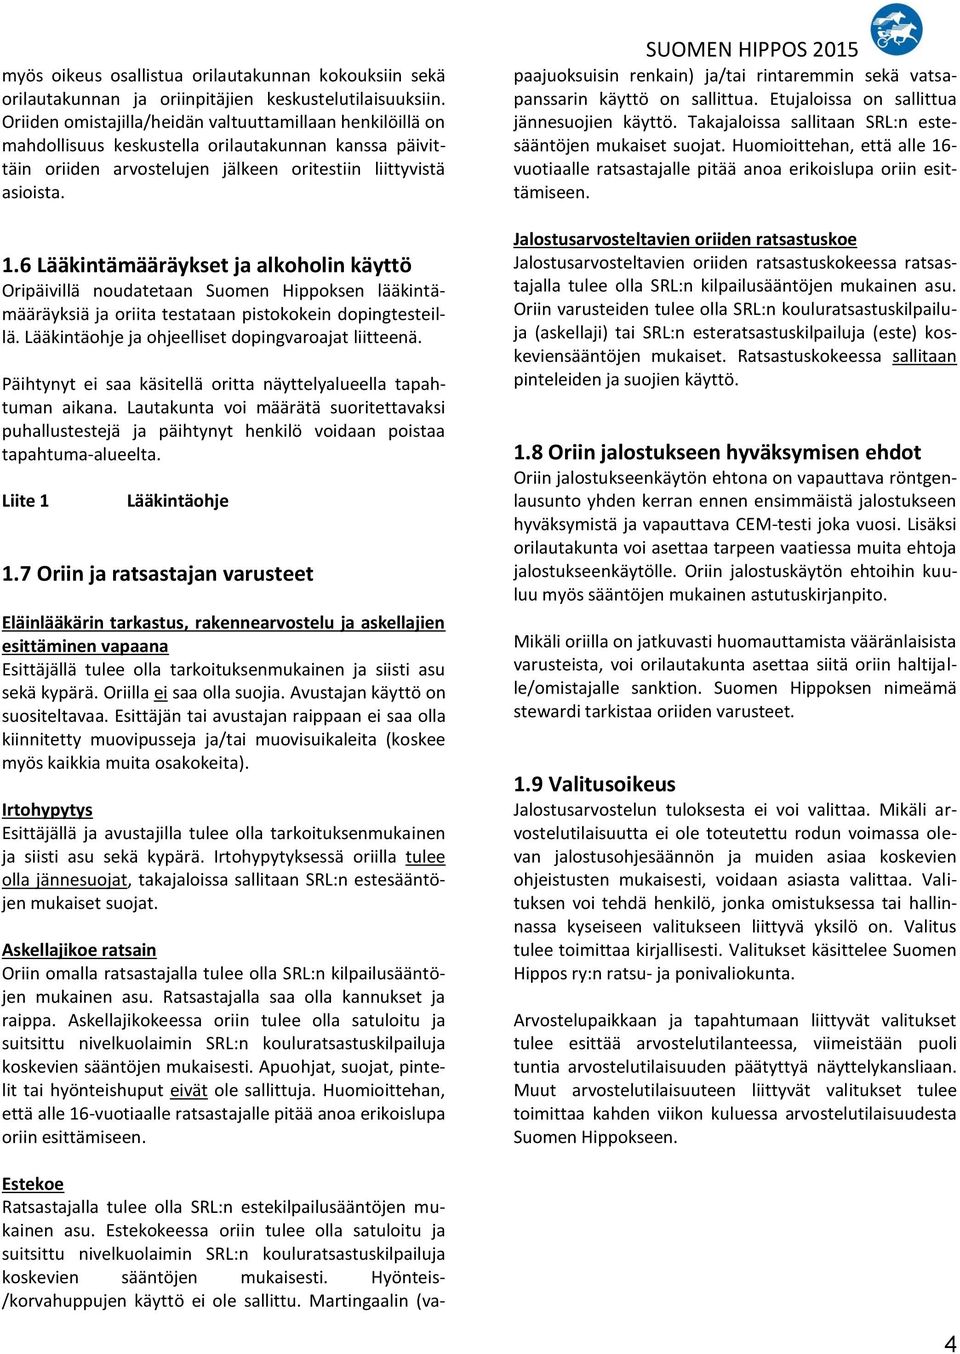 6 Lääkintämääräykset ja alkoholin käyttö Oripäivillä noudatetaan Suomen Hippoksen lääkintämääräyksiä ja oriita testataan pistokokein dopingtesteillä.